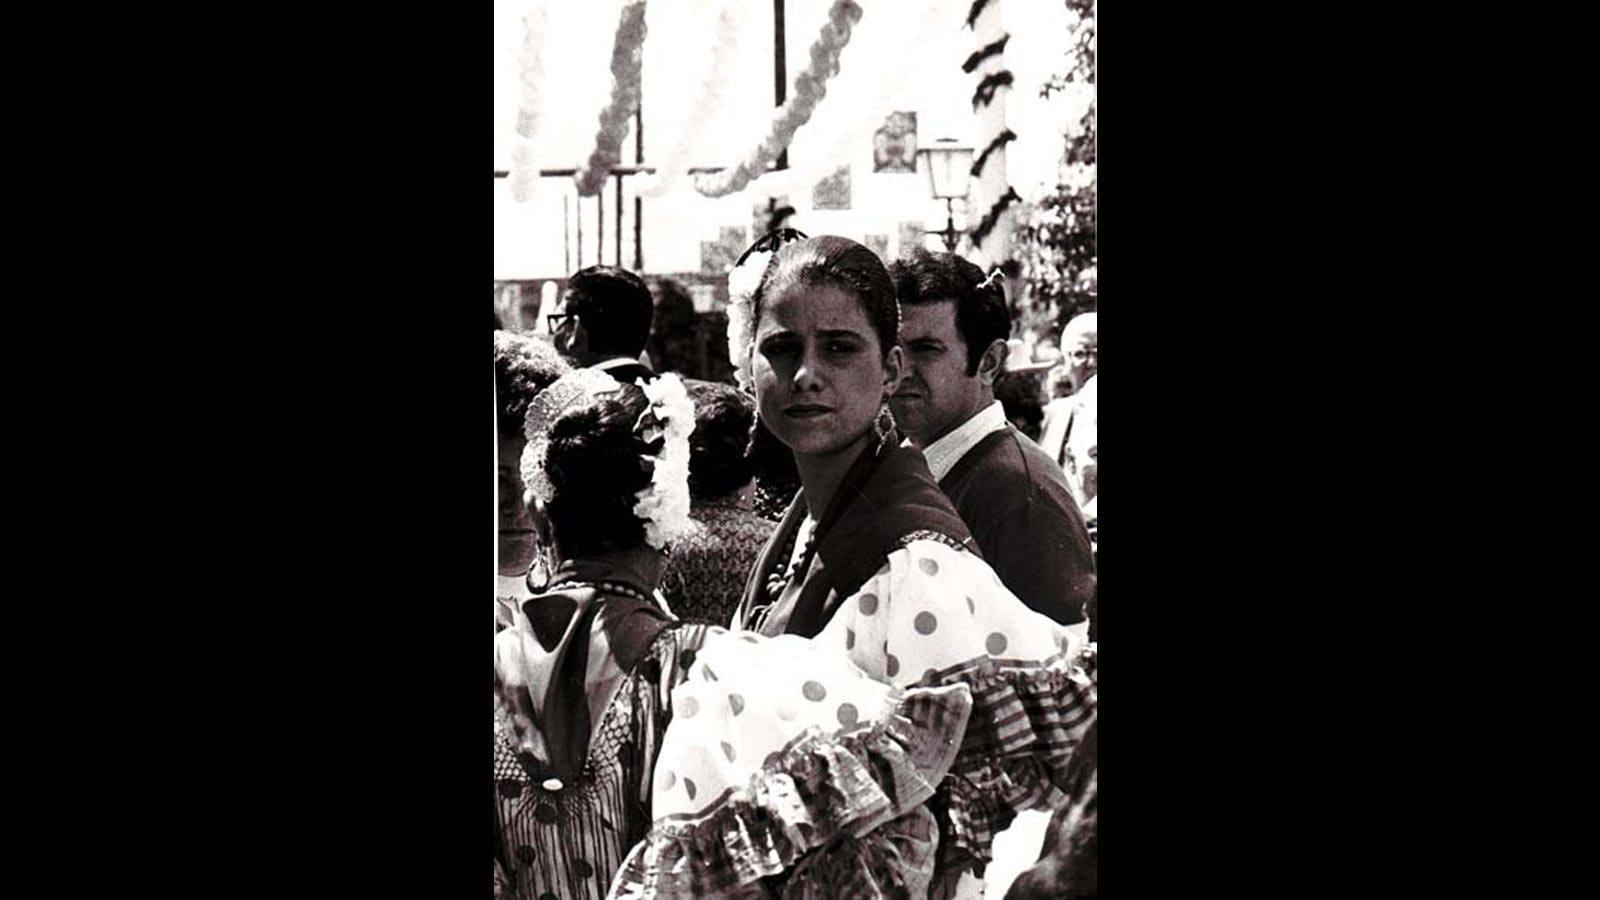 La Feria de Abril de Sevilla en la década de los 80